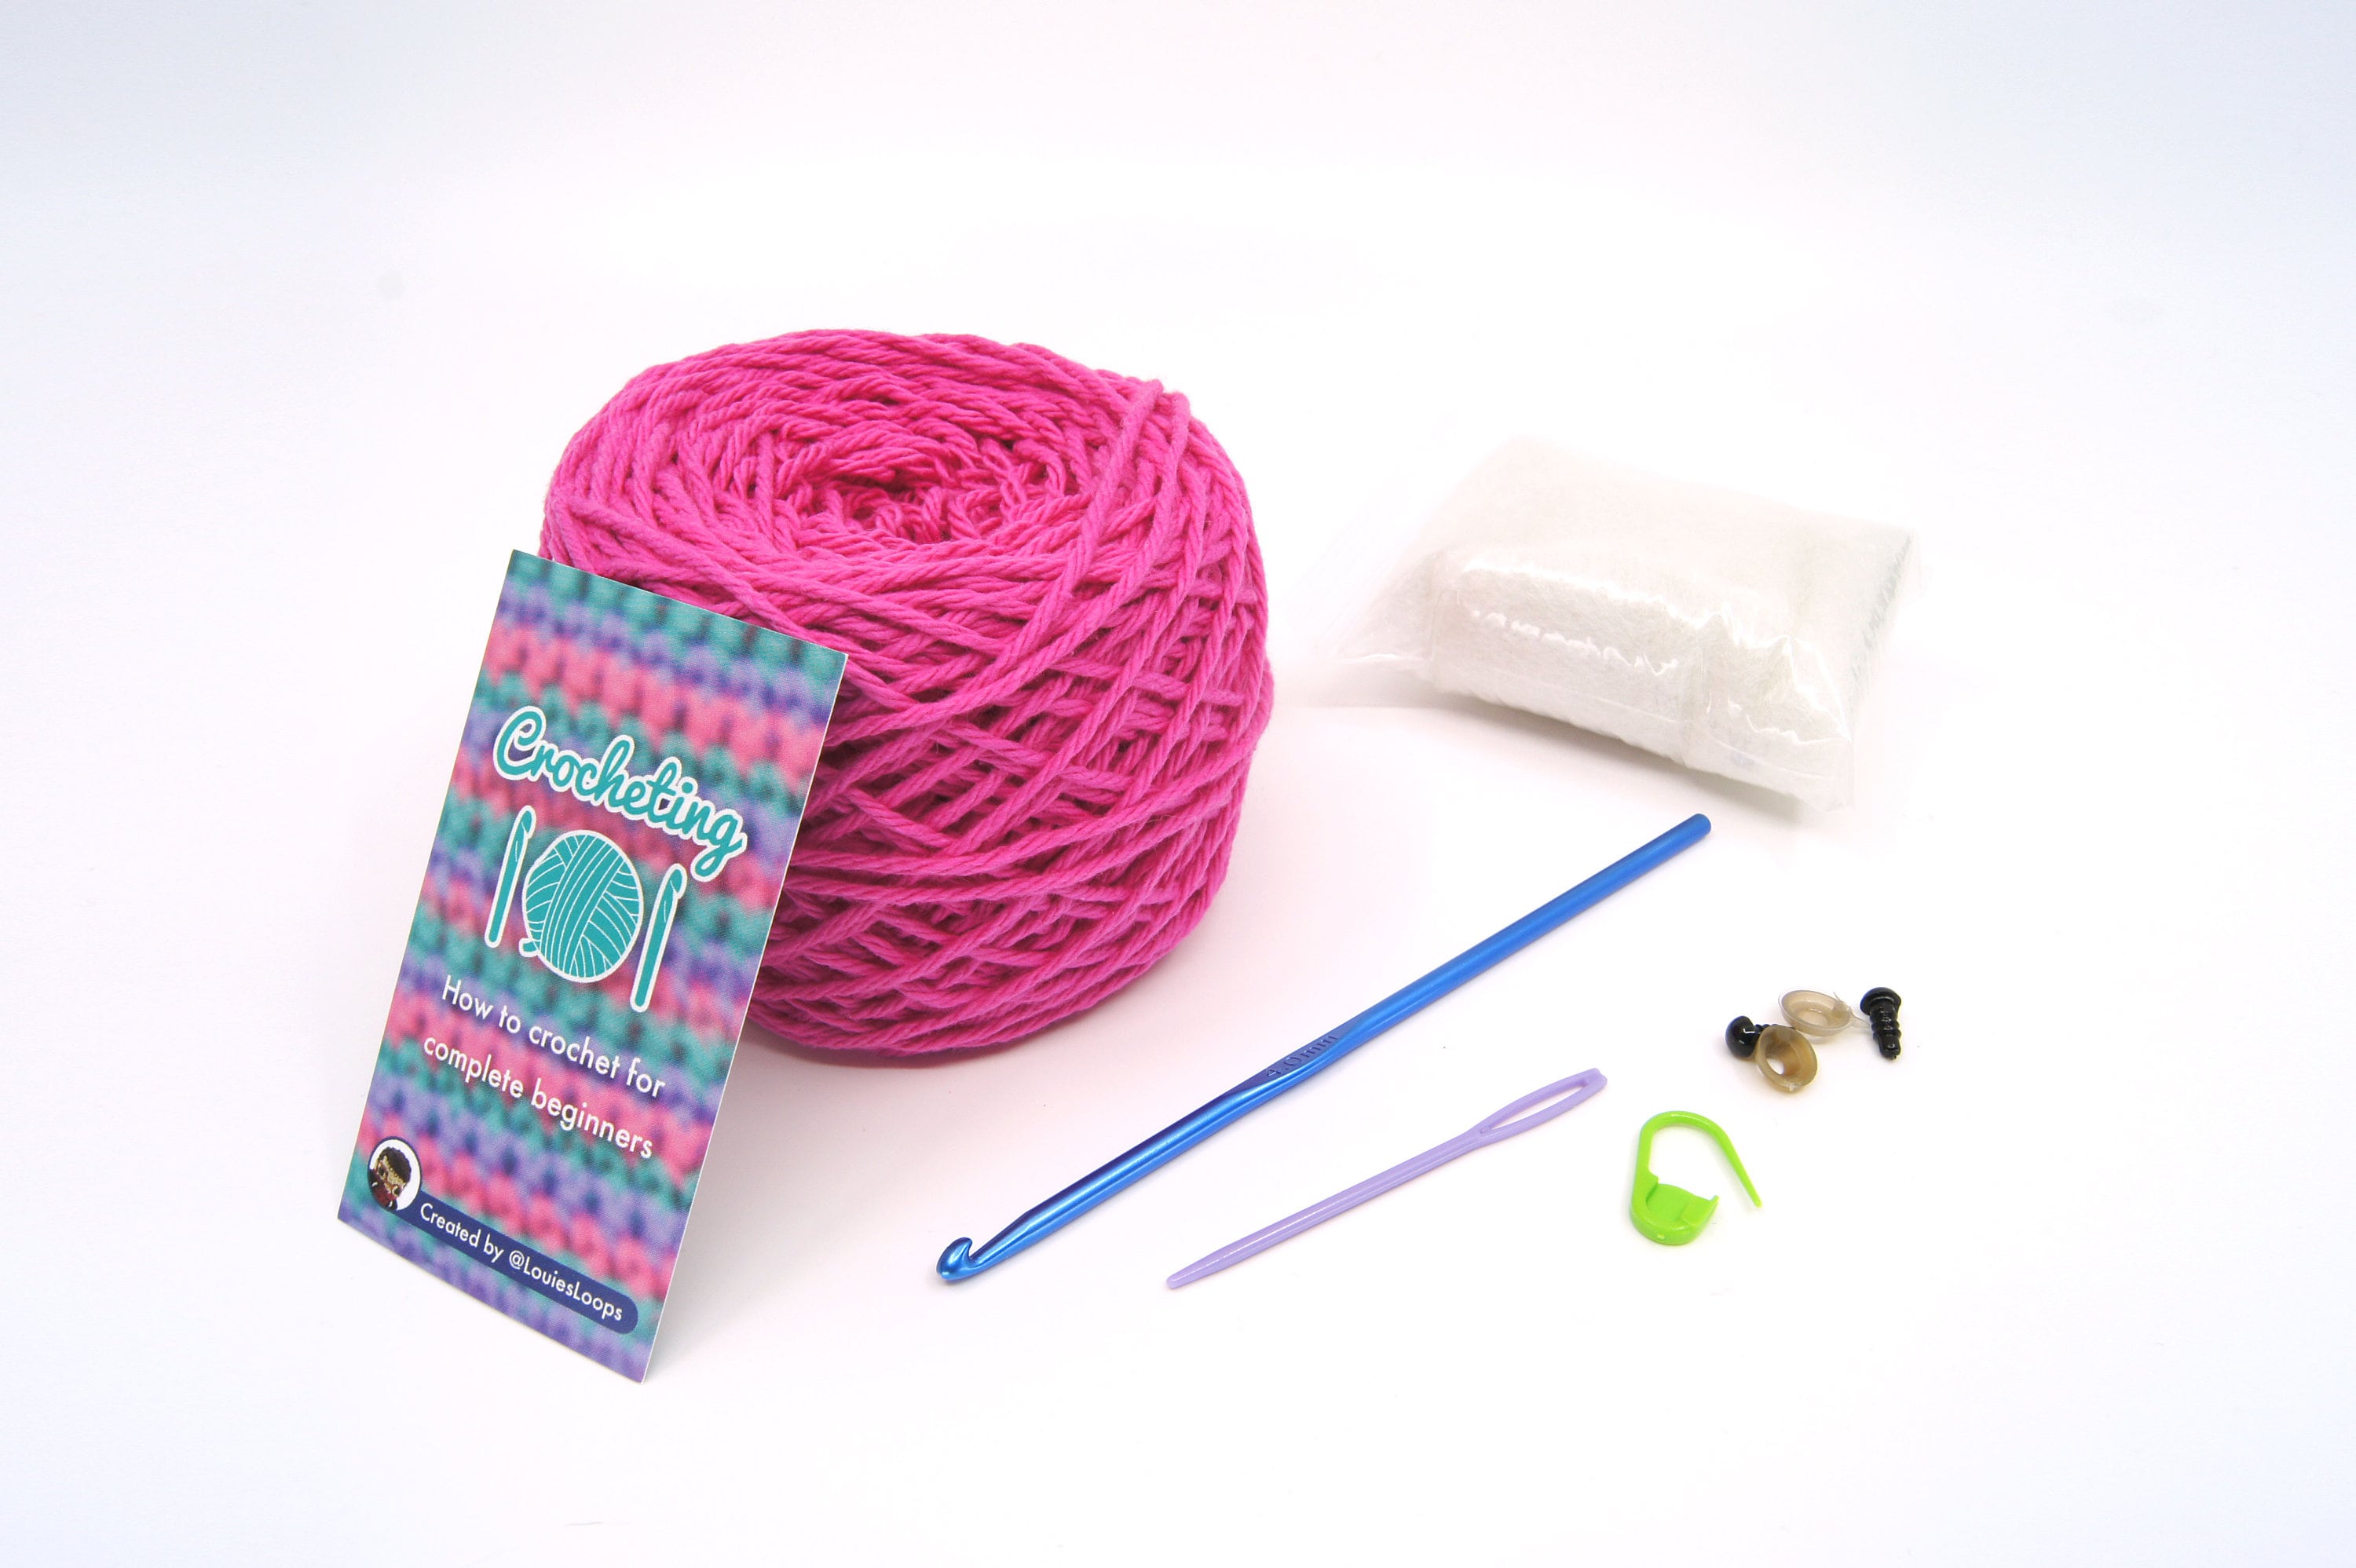 Kit all'uncinetto per principianti Easy First Crochet Starter Kit Regalo  artigianale fai-da-te / Crocheting 101 Starter Kit: come lavorare all' uncinetto per principianti assoluti -  Italia